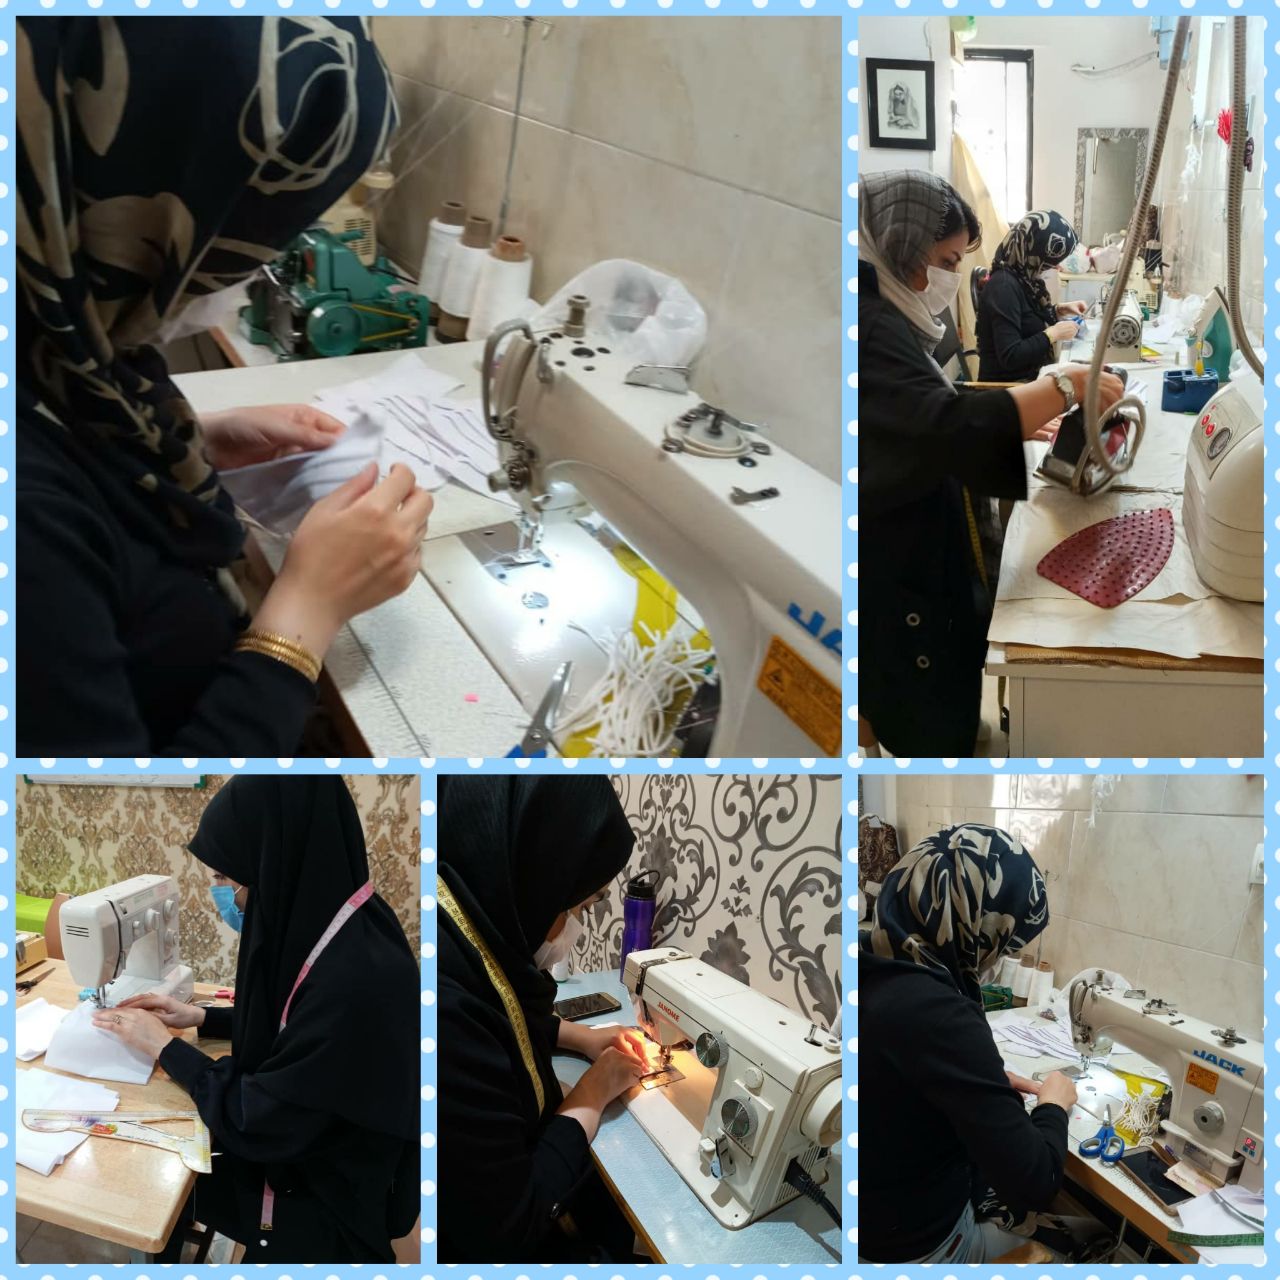 پویش شورو شعورحسینی با راه اندازی کارگاه و تولید ماسک درصومعه سرا 